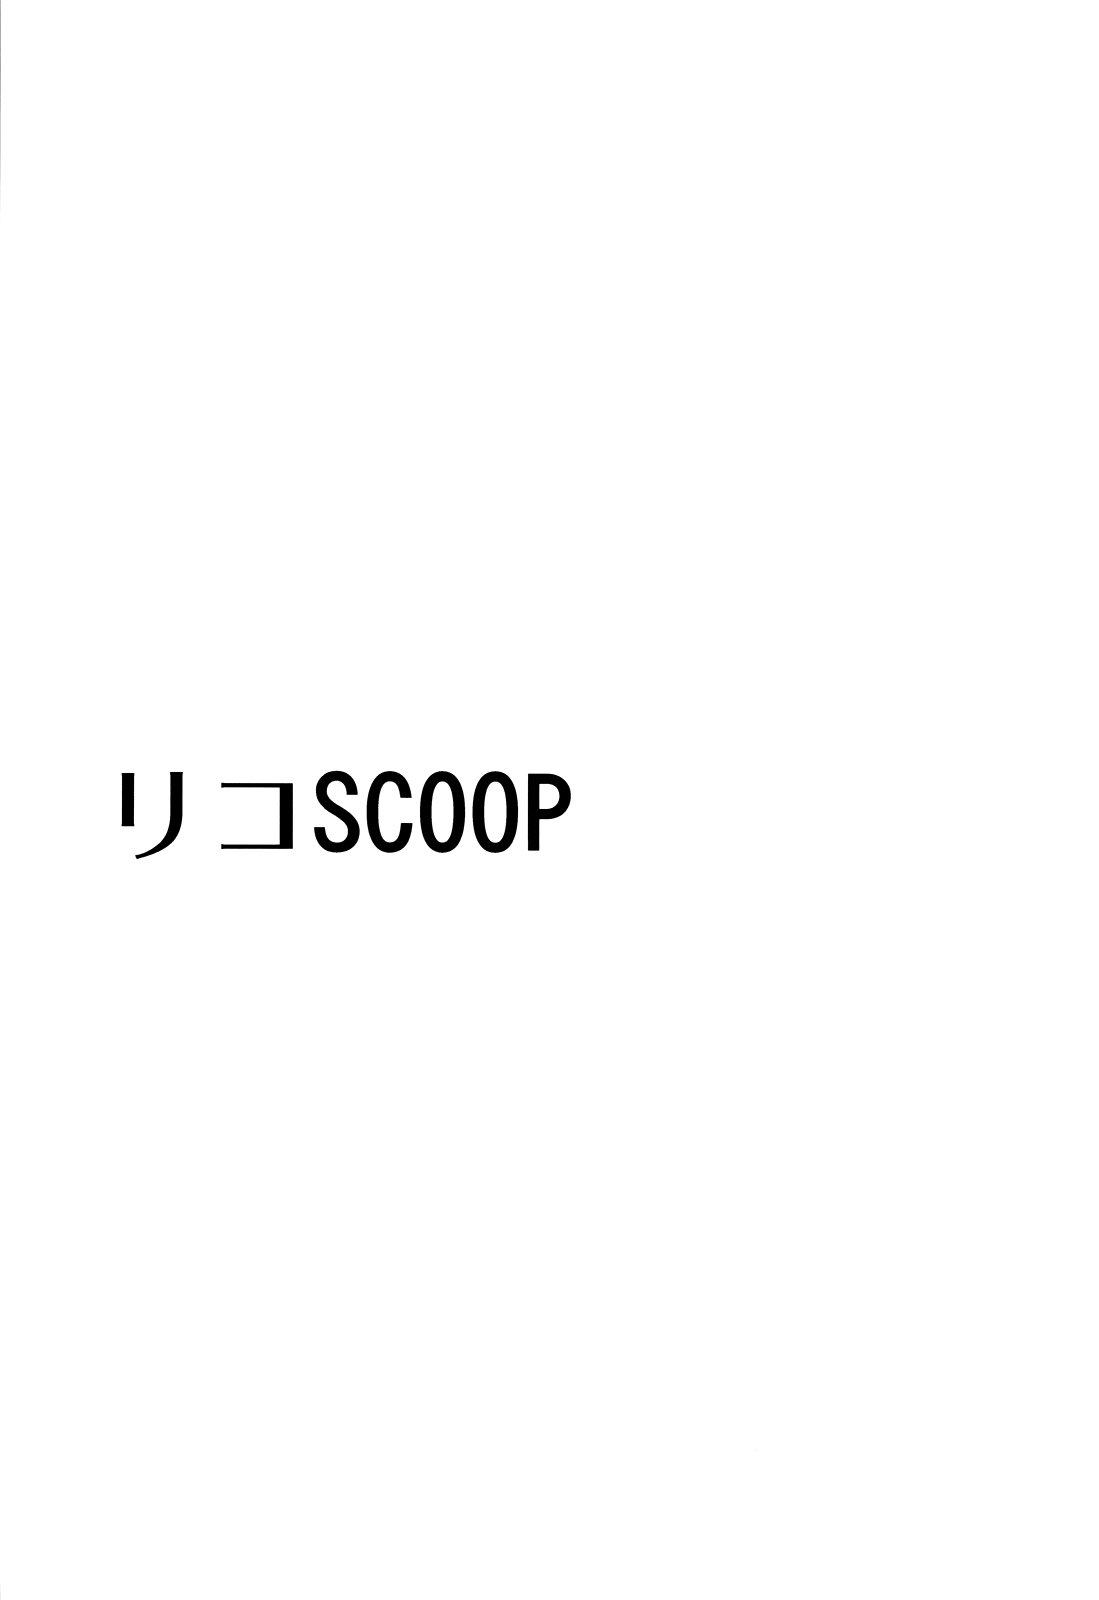 Riko Scoop - 1